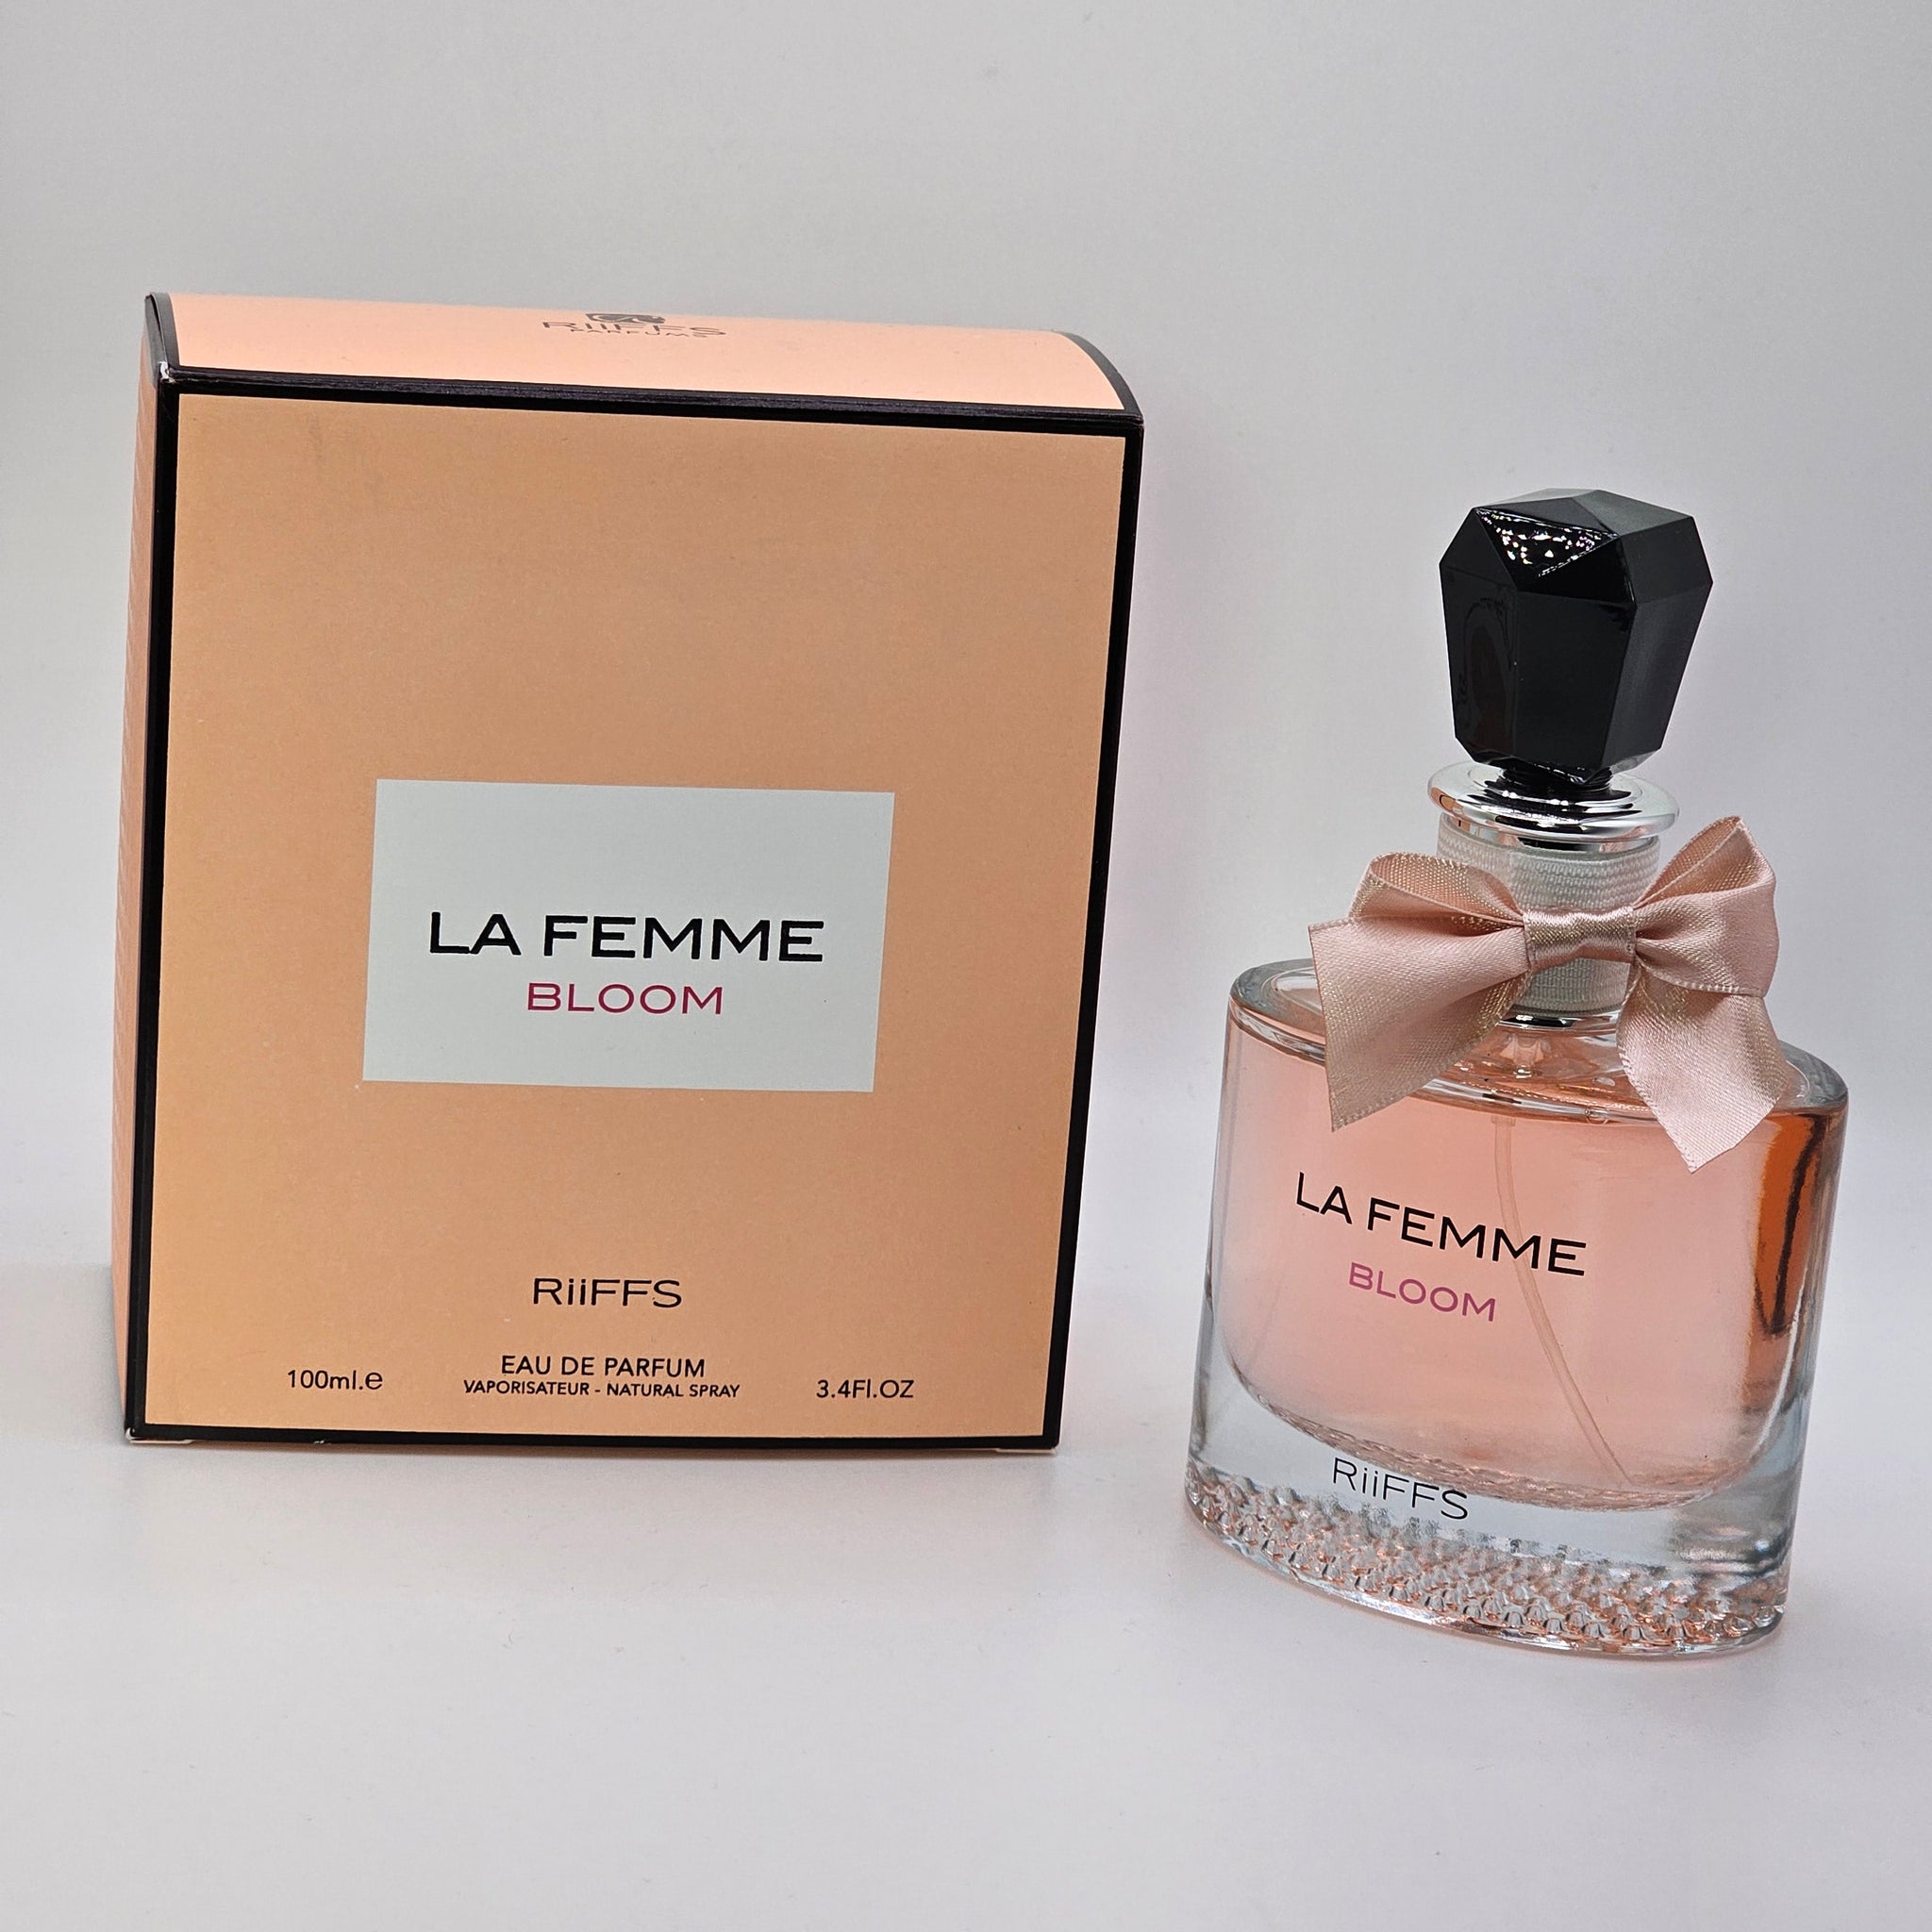 La Femme Bloom By Riiffs 100ml 3.4 Oz Eau De Parfum For Women Floral